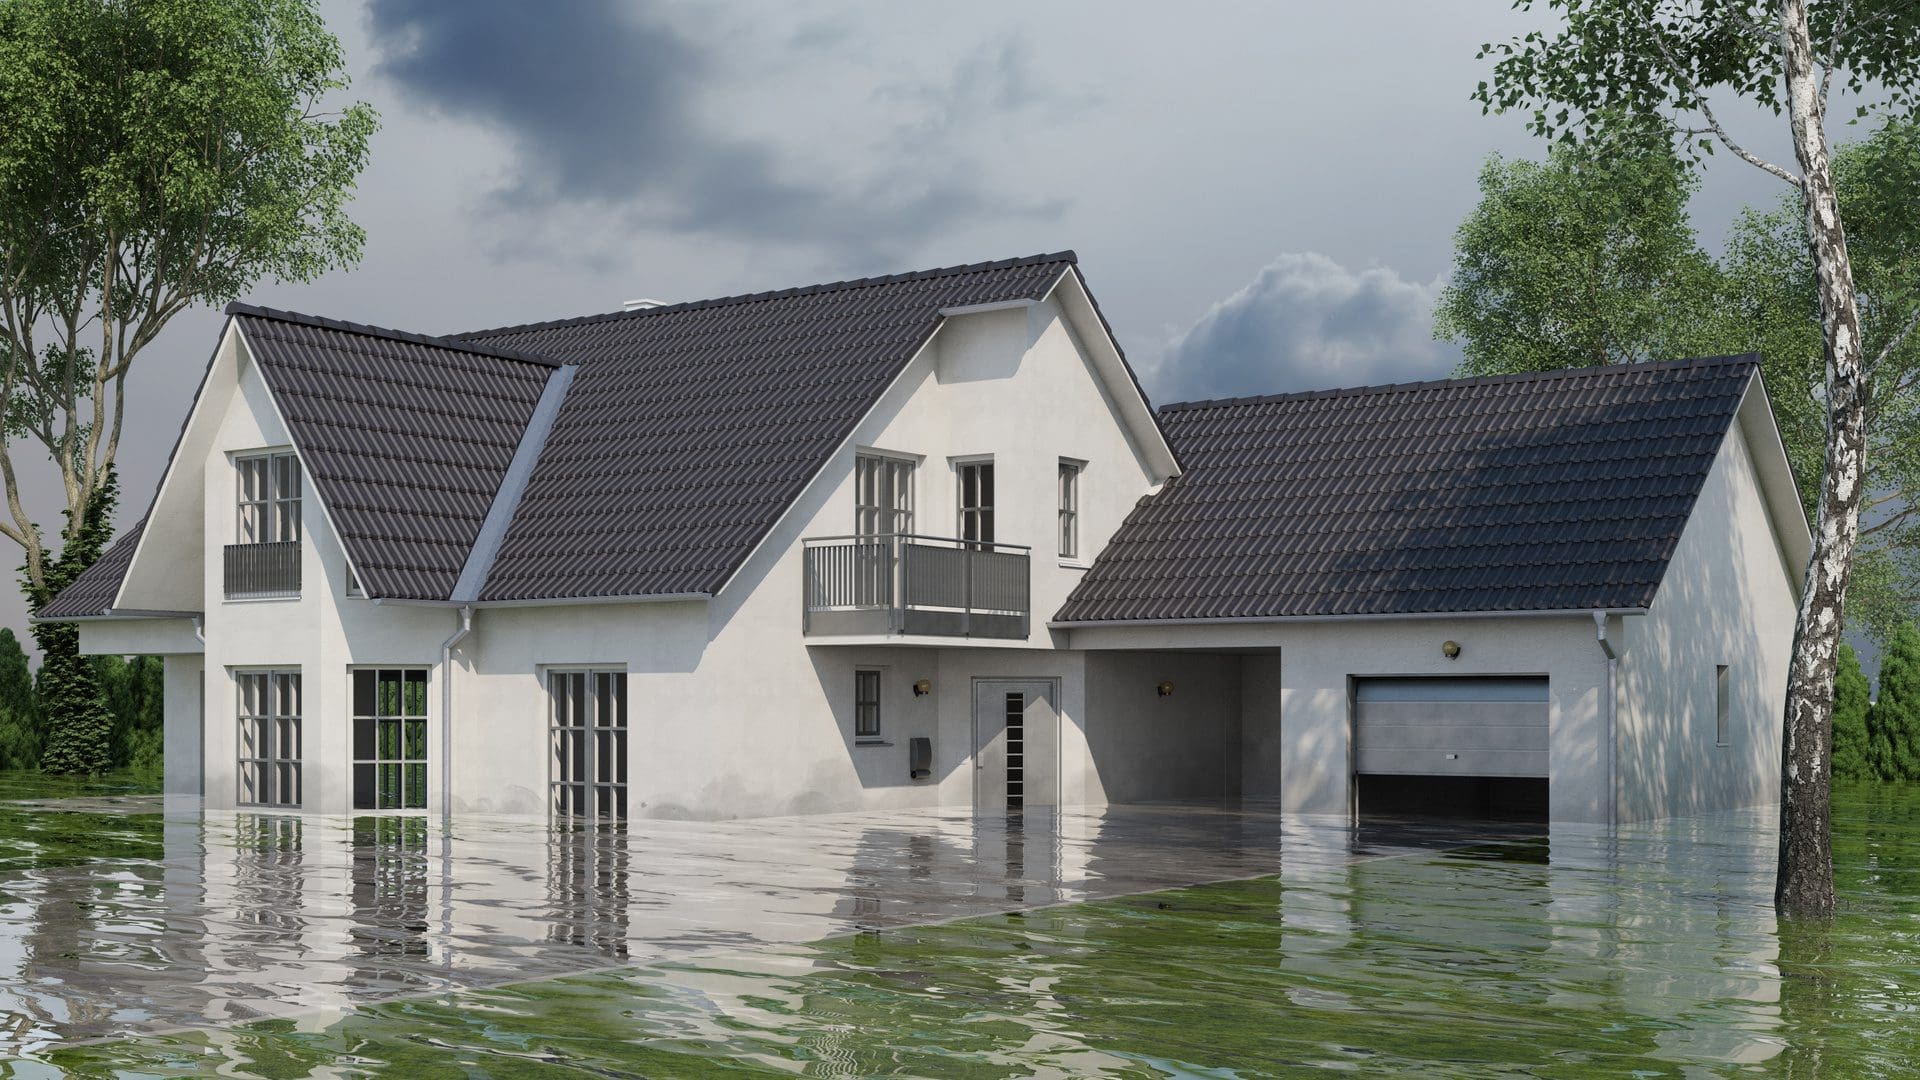 Haus unter Wasser | Gebäude mit Wasserschaden nach Hochwasser (© Robert Kneschke / stock.adobe.com)